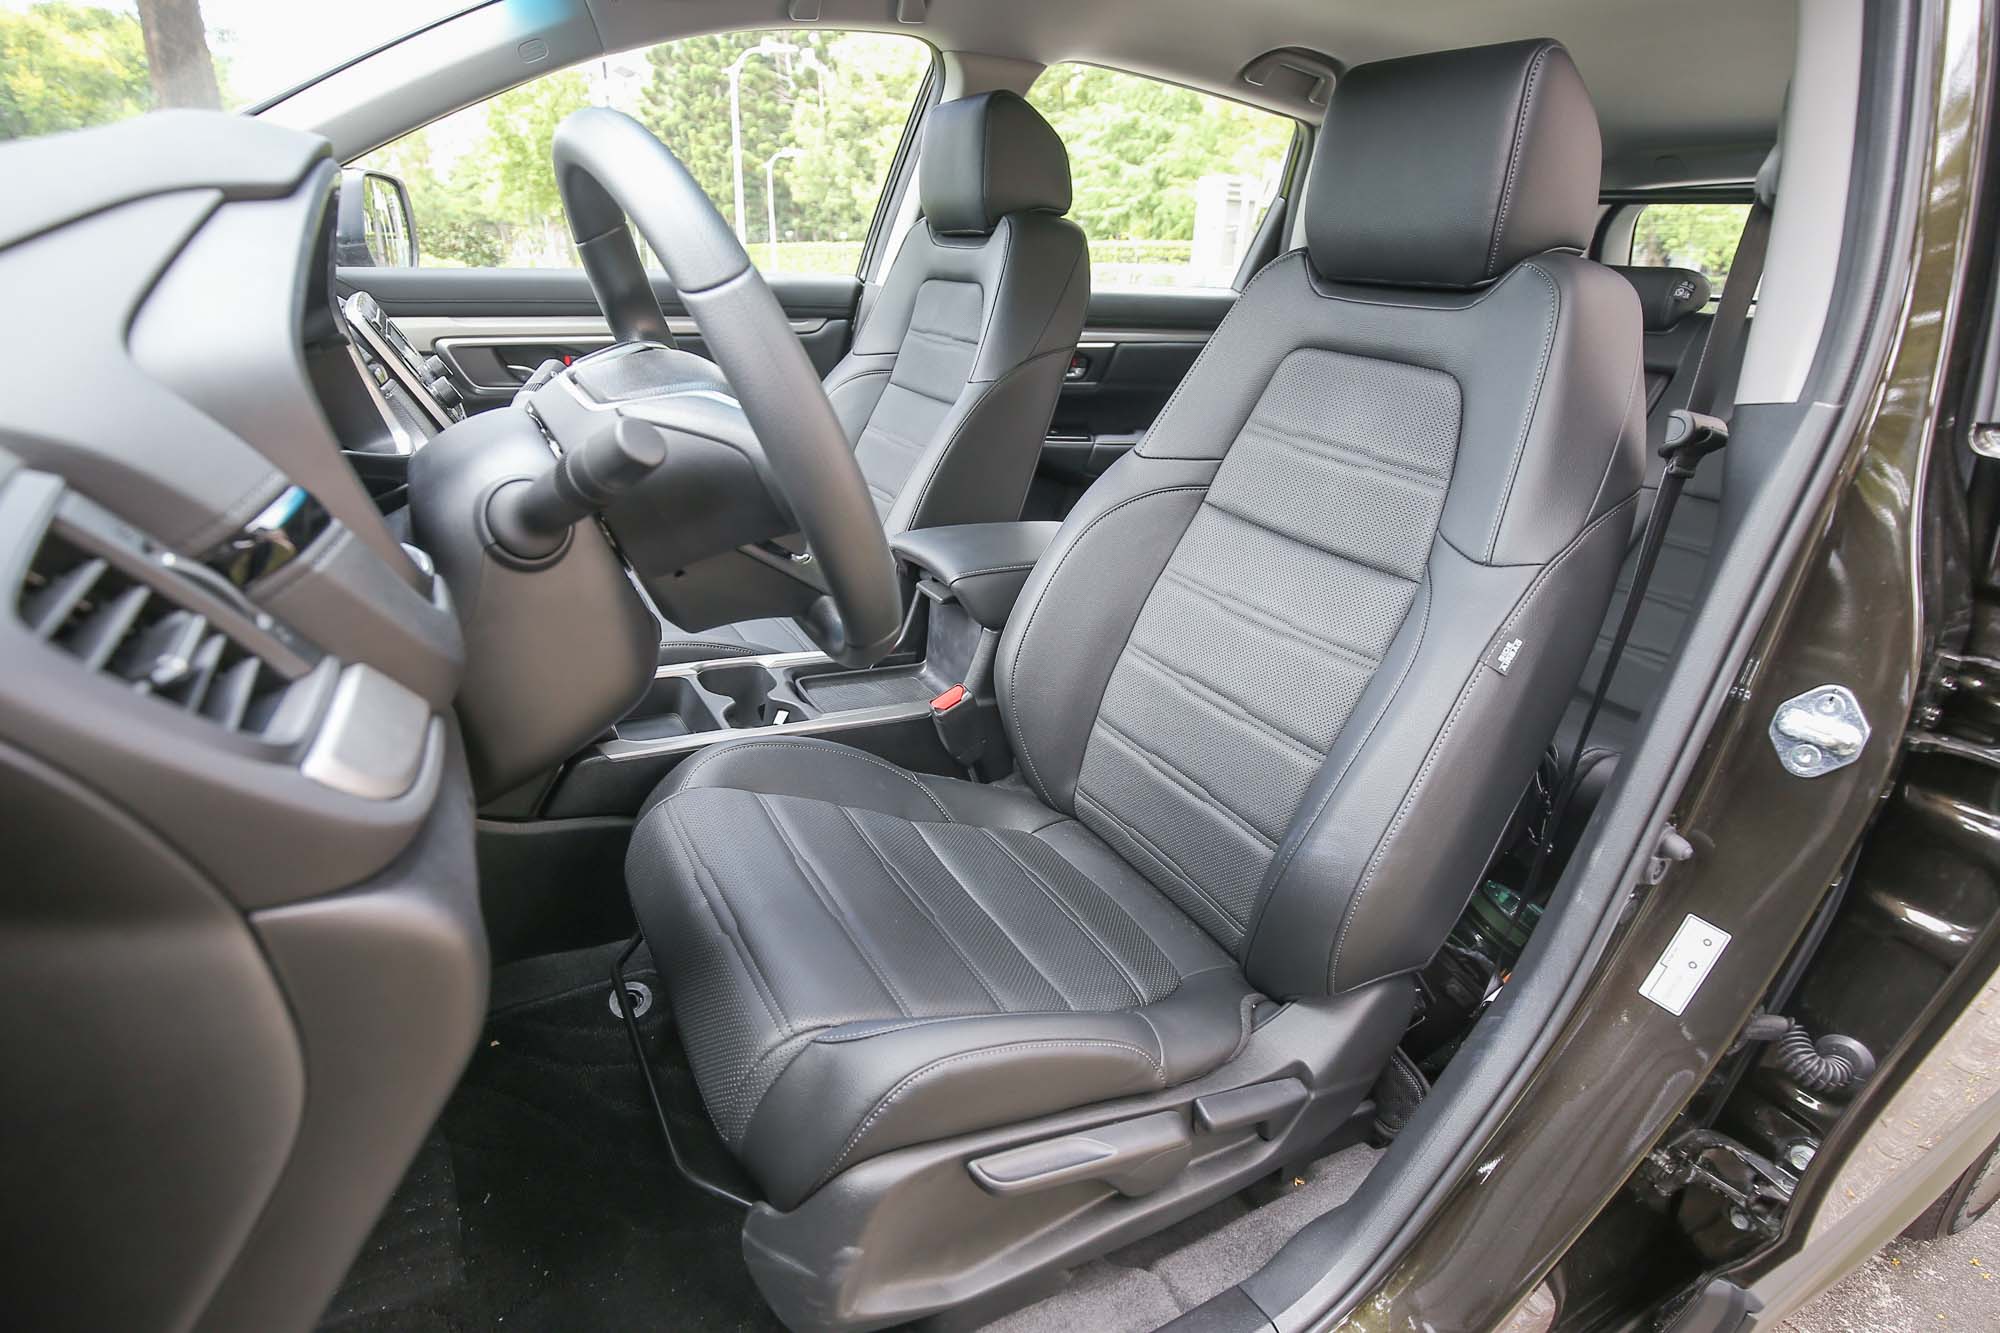 雖然入門 VTi 車型前排座椅為手動調整，但頂規的 S 車型則有同級唯一的左右電動座椅設計。